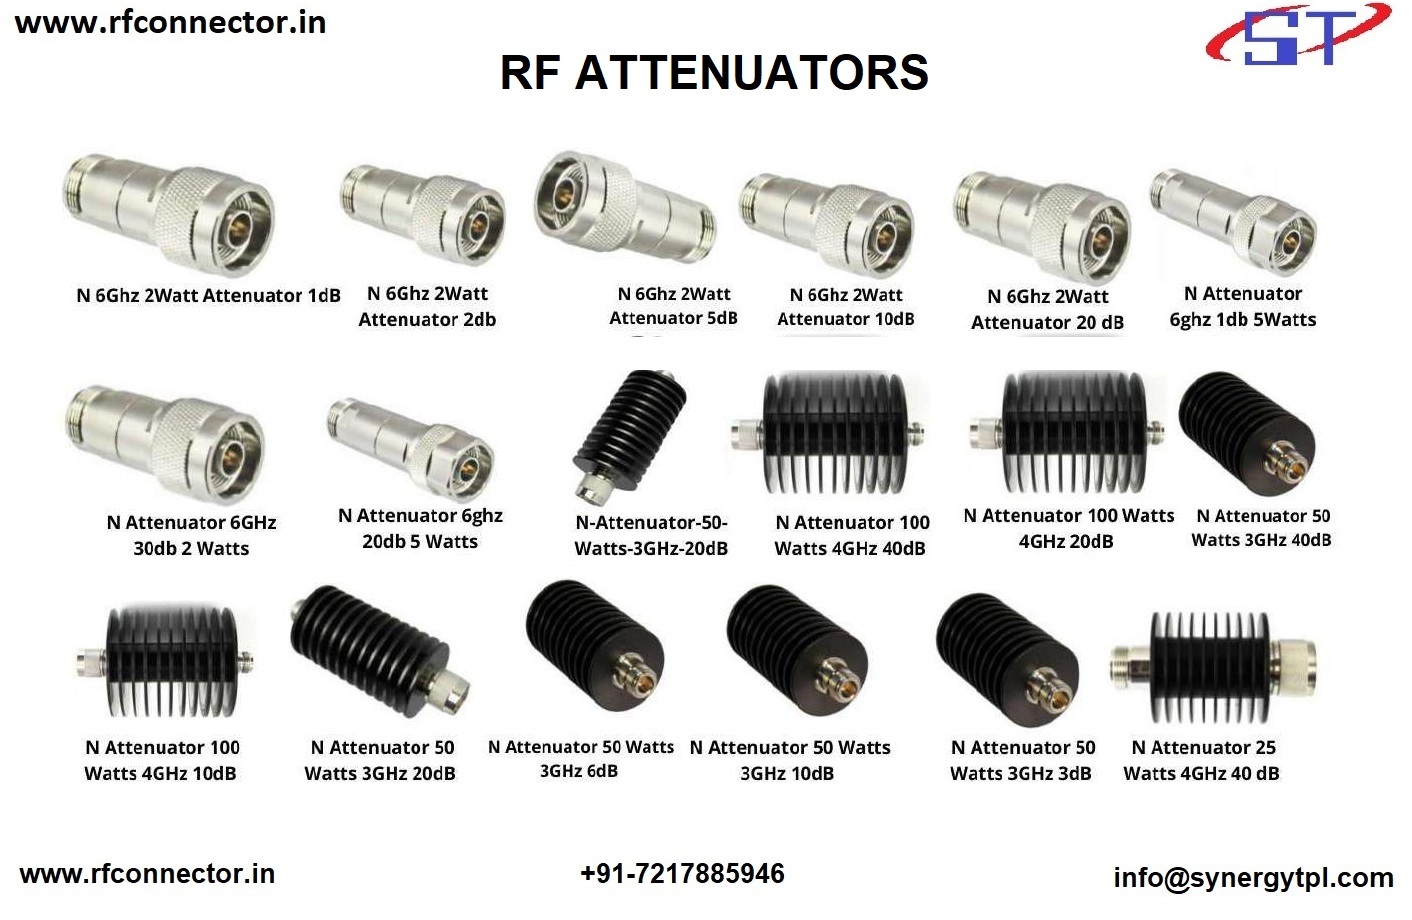 1watt attenuator RF ATTENUATOR